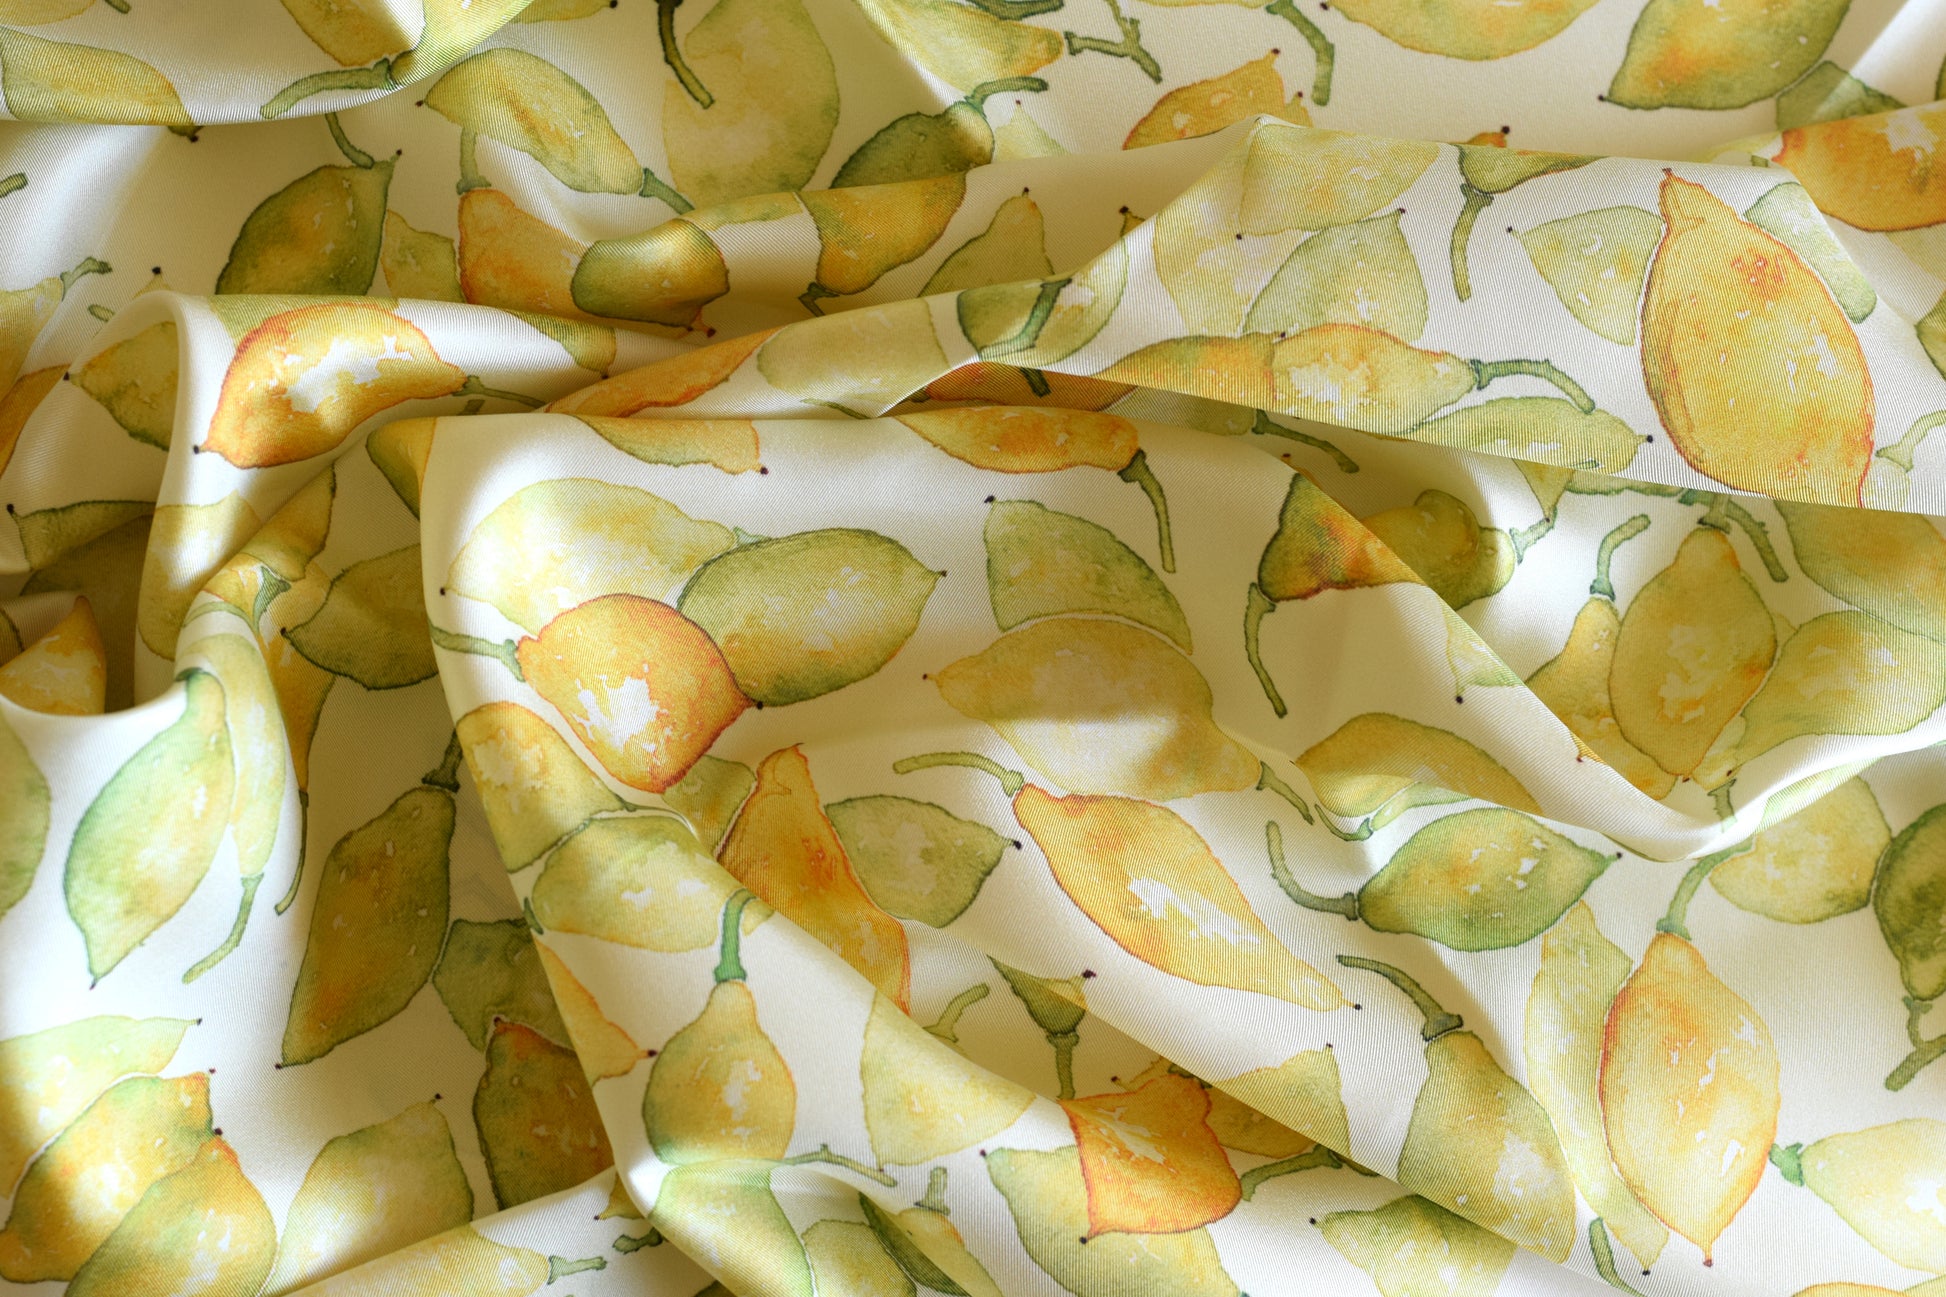 lemon silk scarf